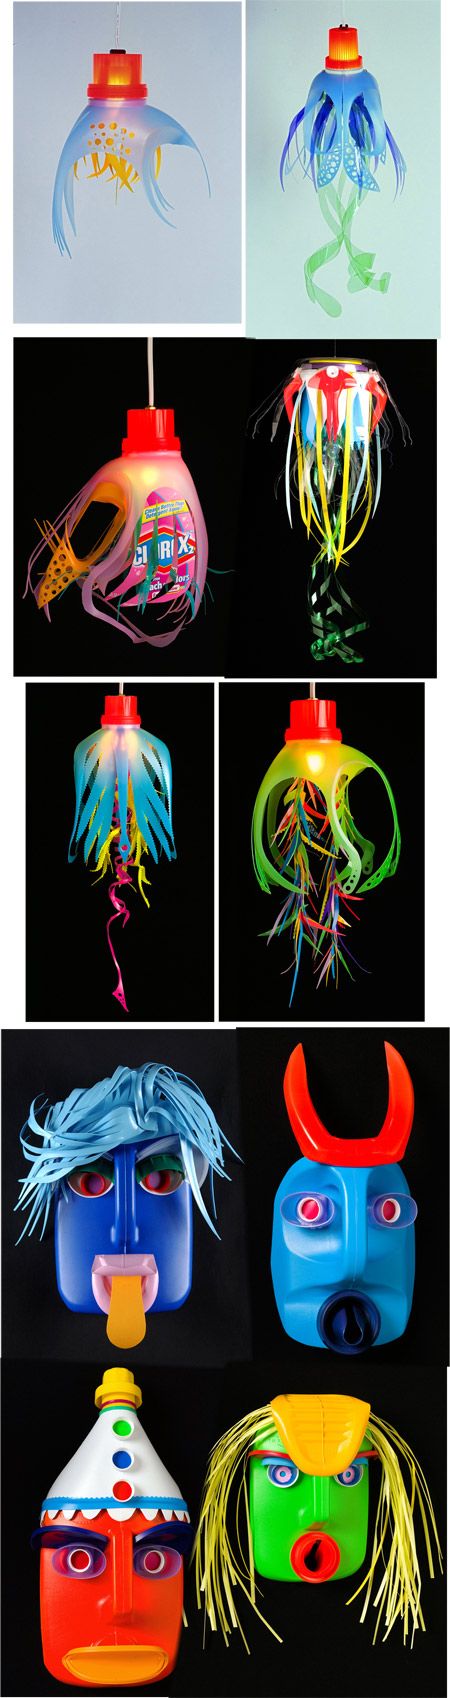 Máscaras de carnaval de David Edgar botellas de detergentes | Manualidades Artesanas